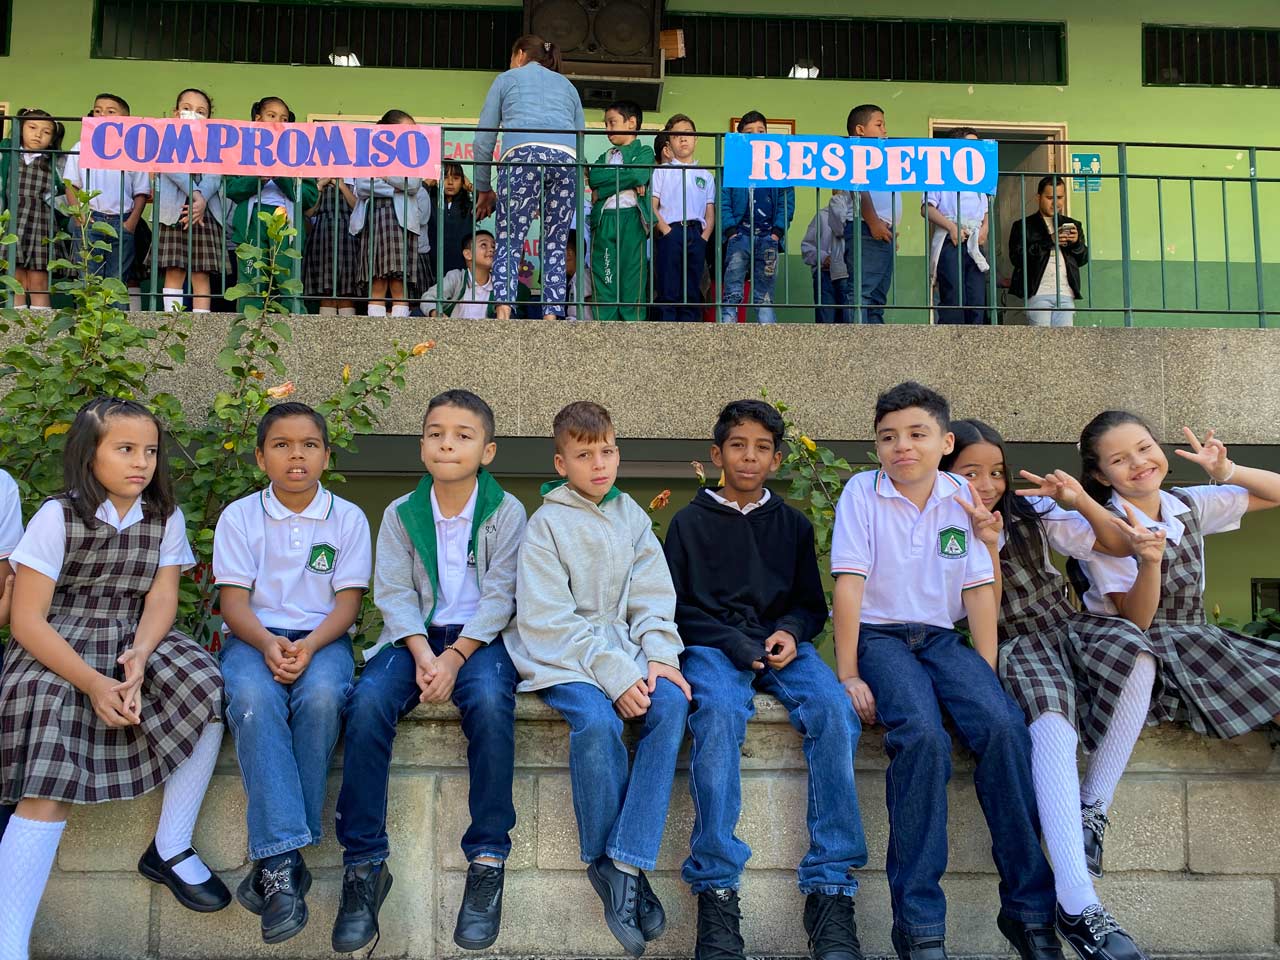 Los más de 400.000 estudiantes del sistema educativo de Medellín retoman el calendario escolar el próximo 4 de julio